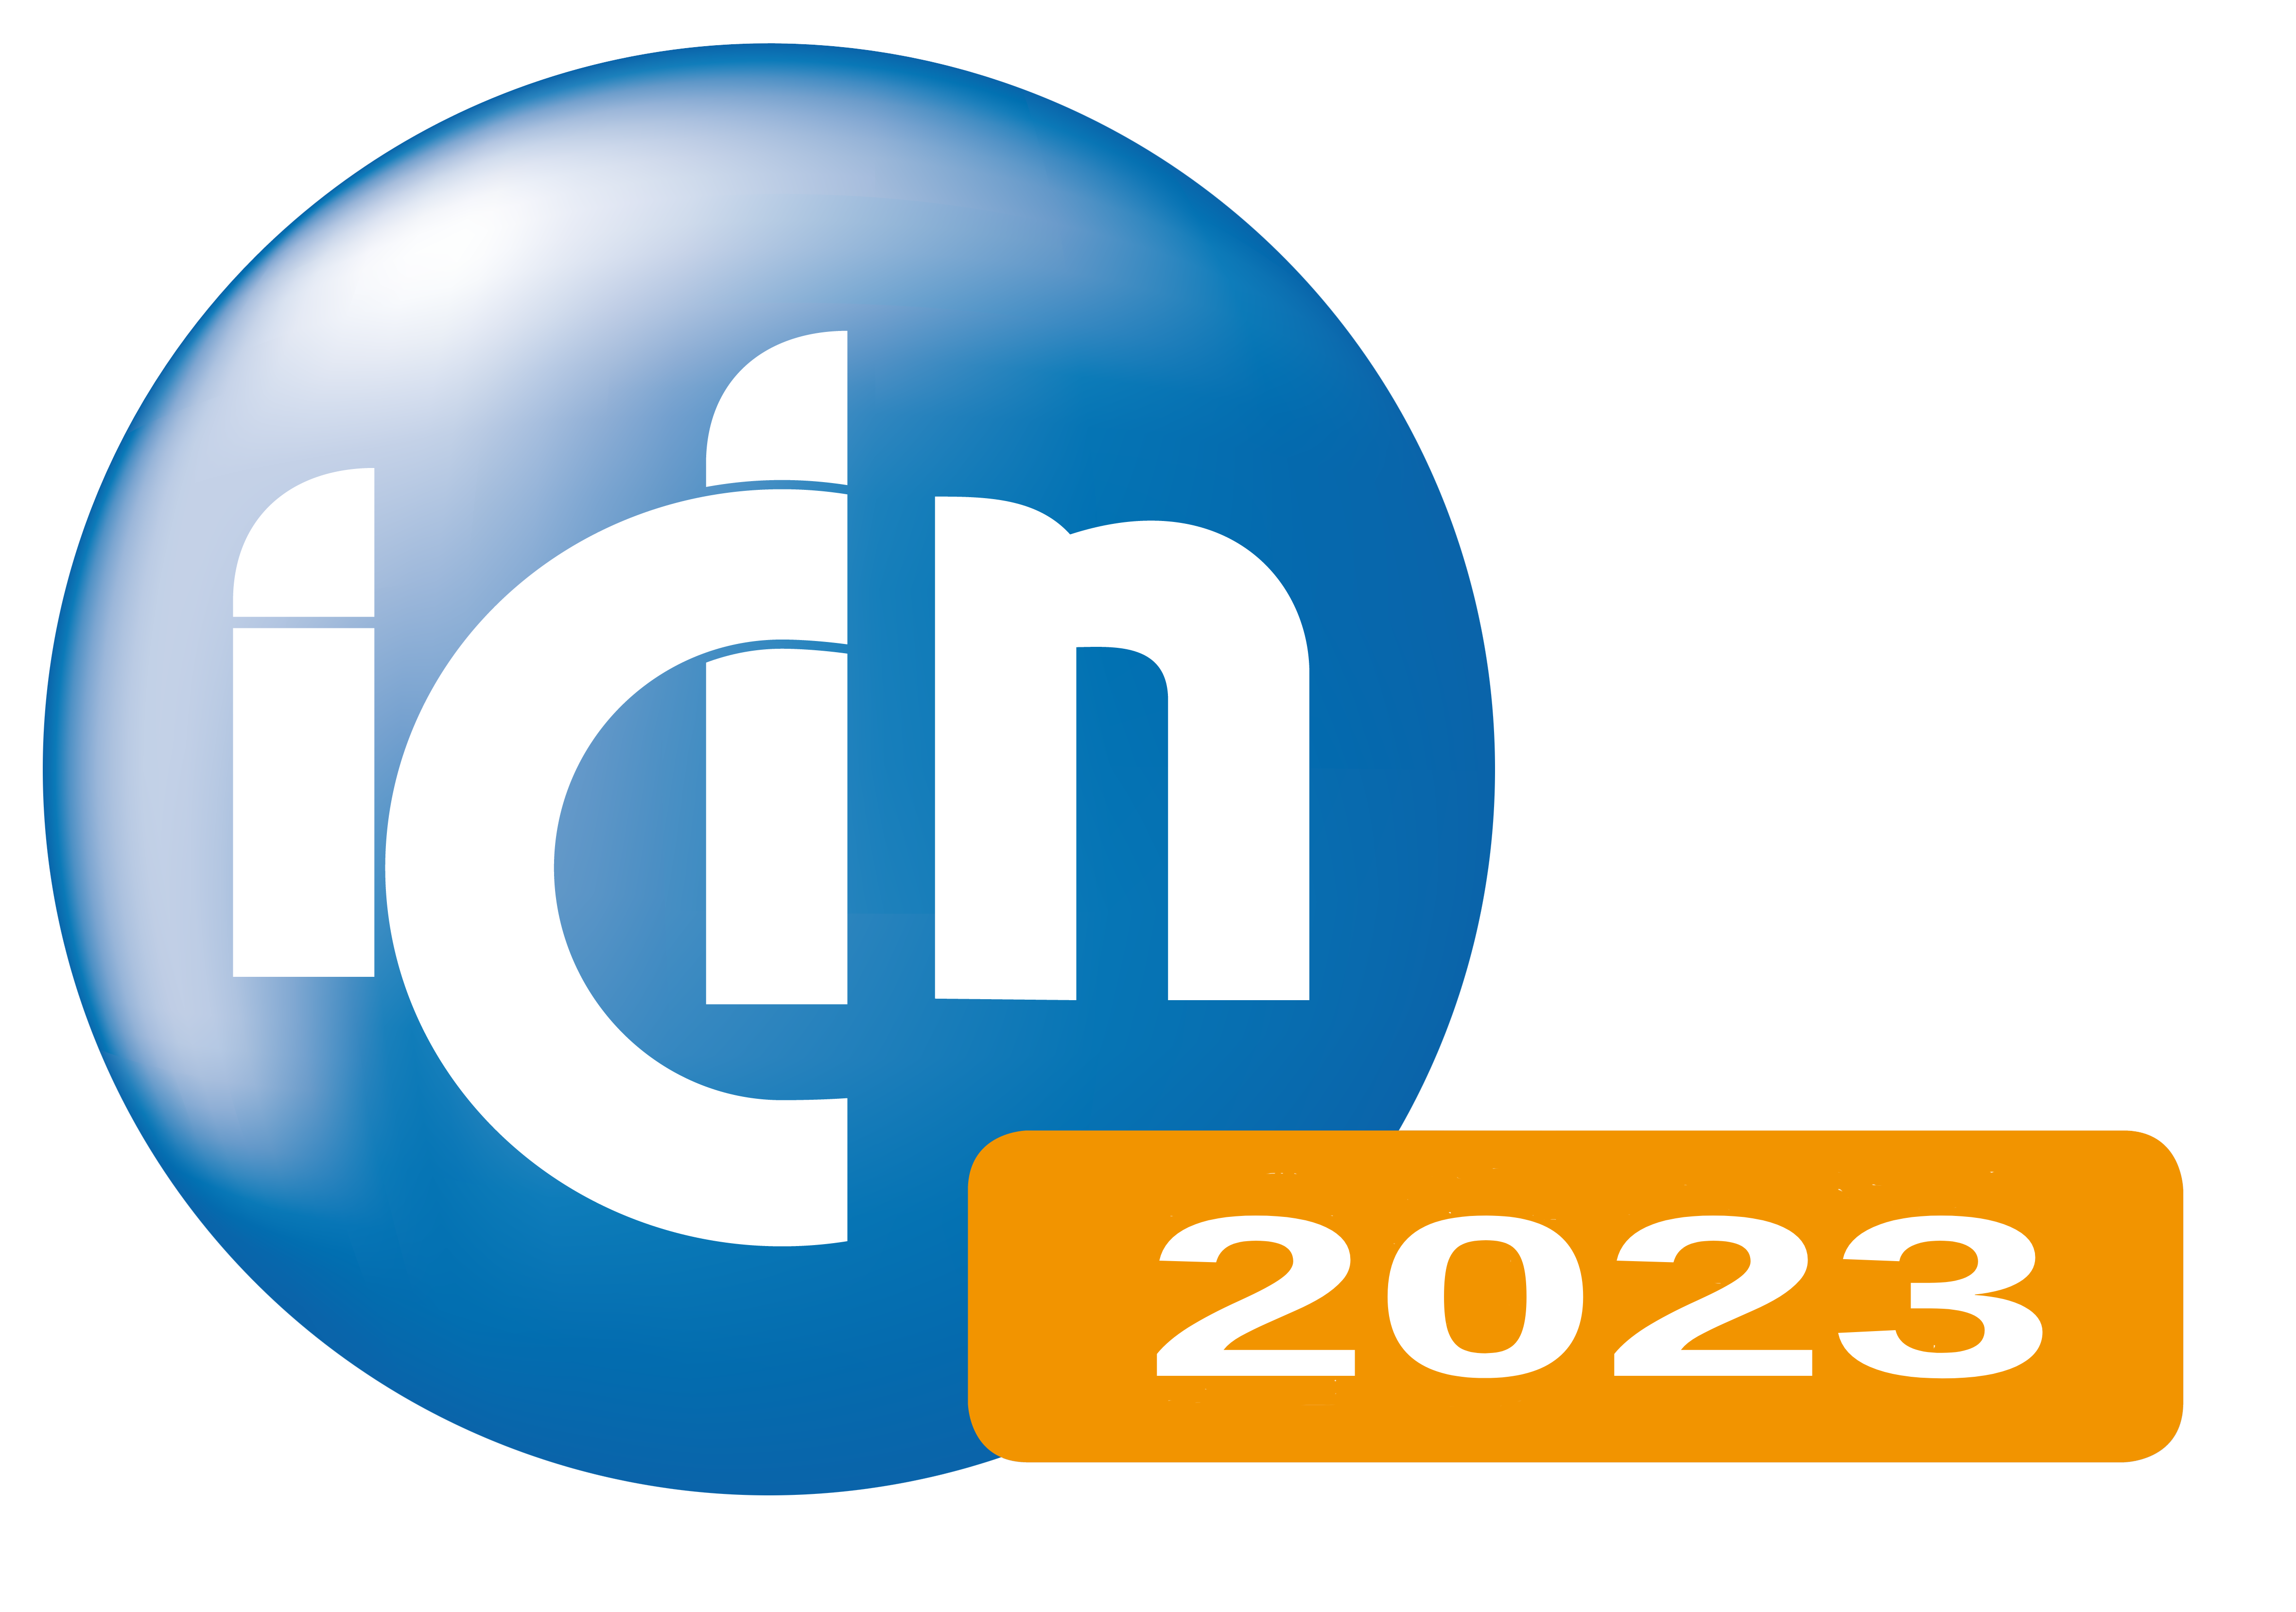 ICIN 2023